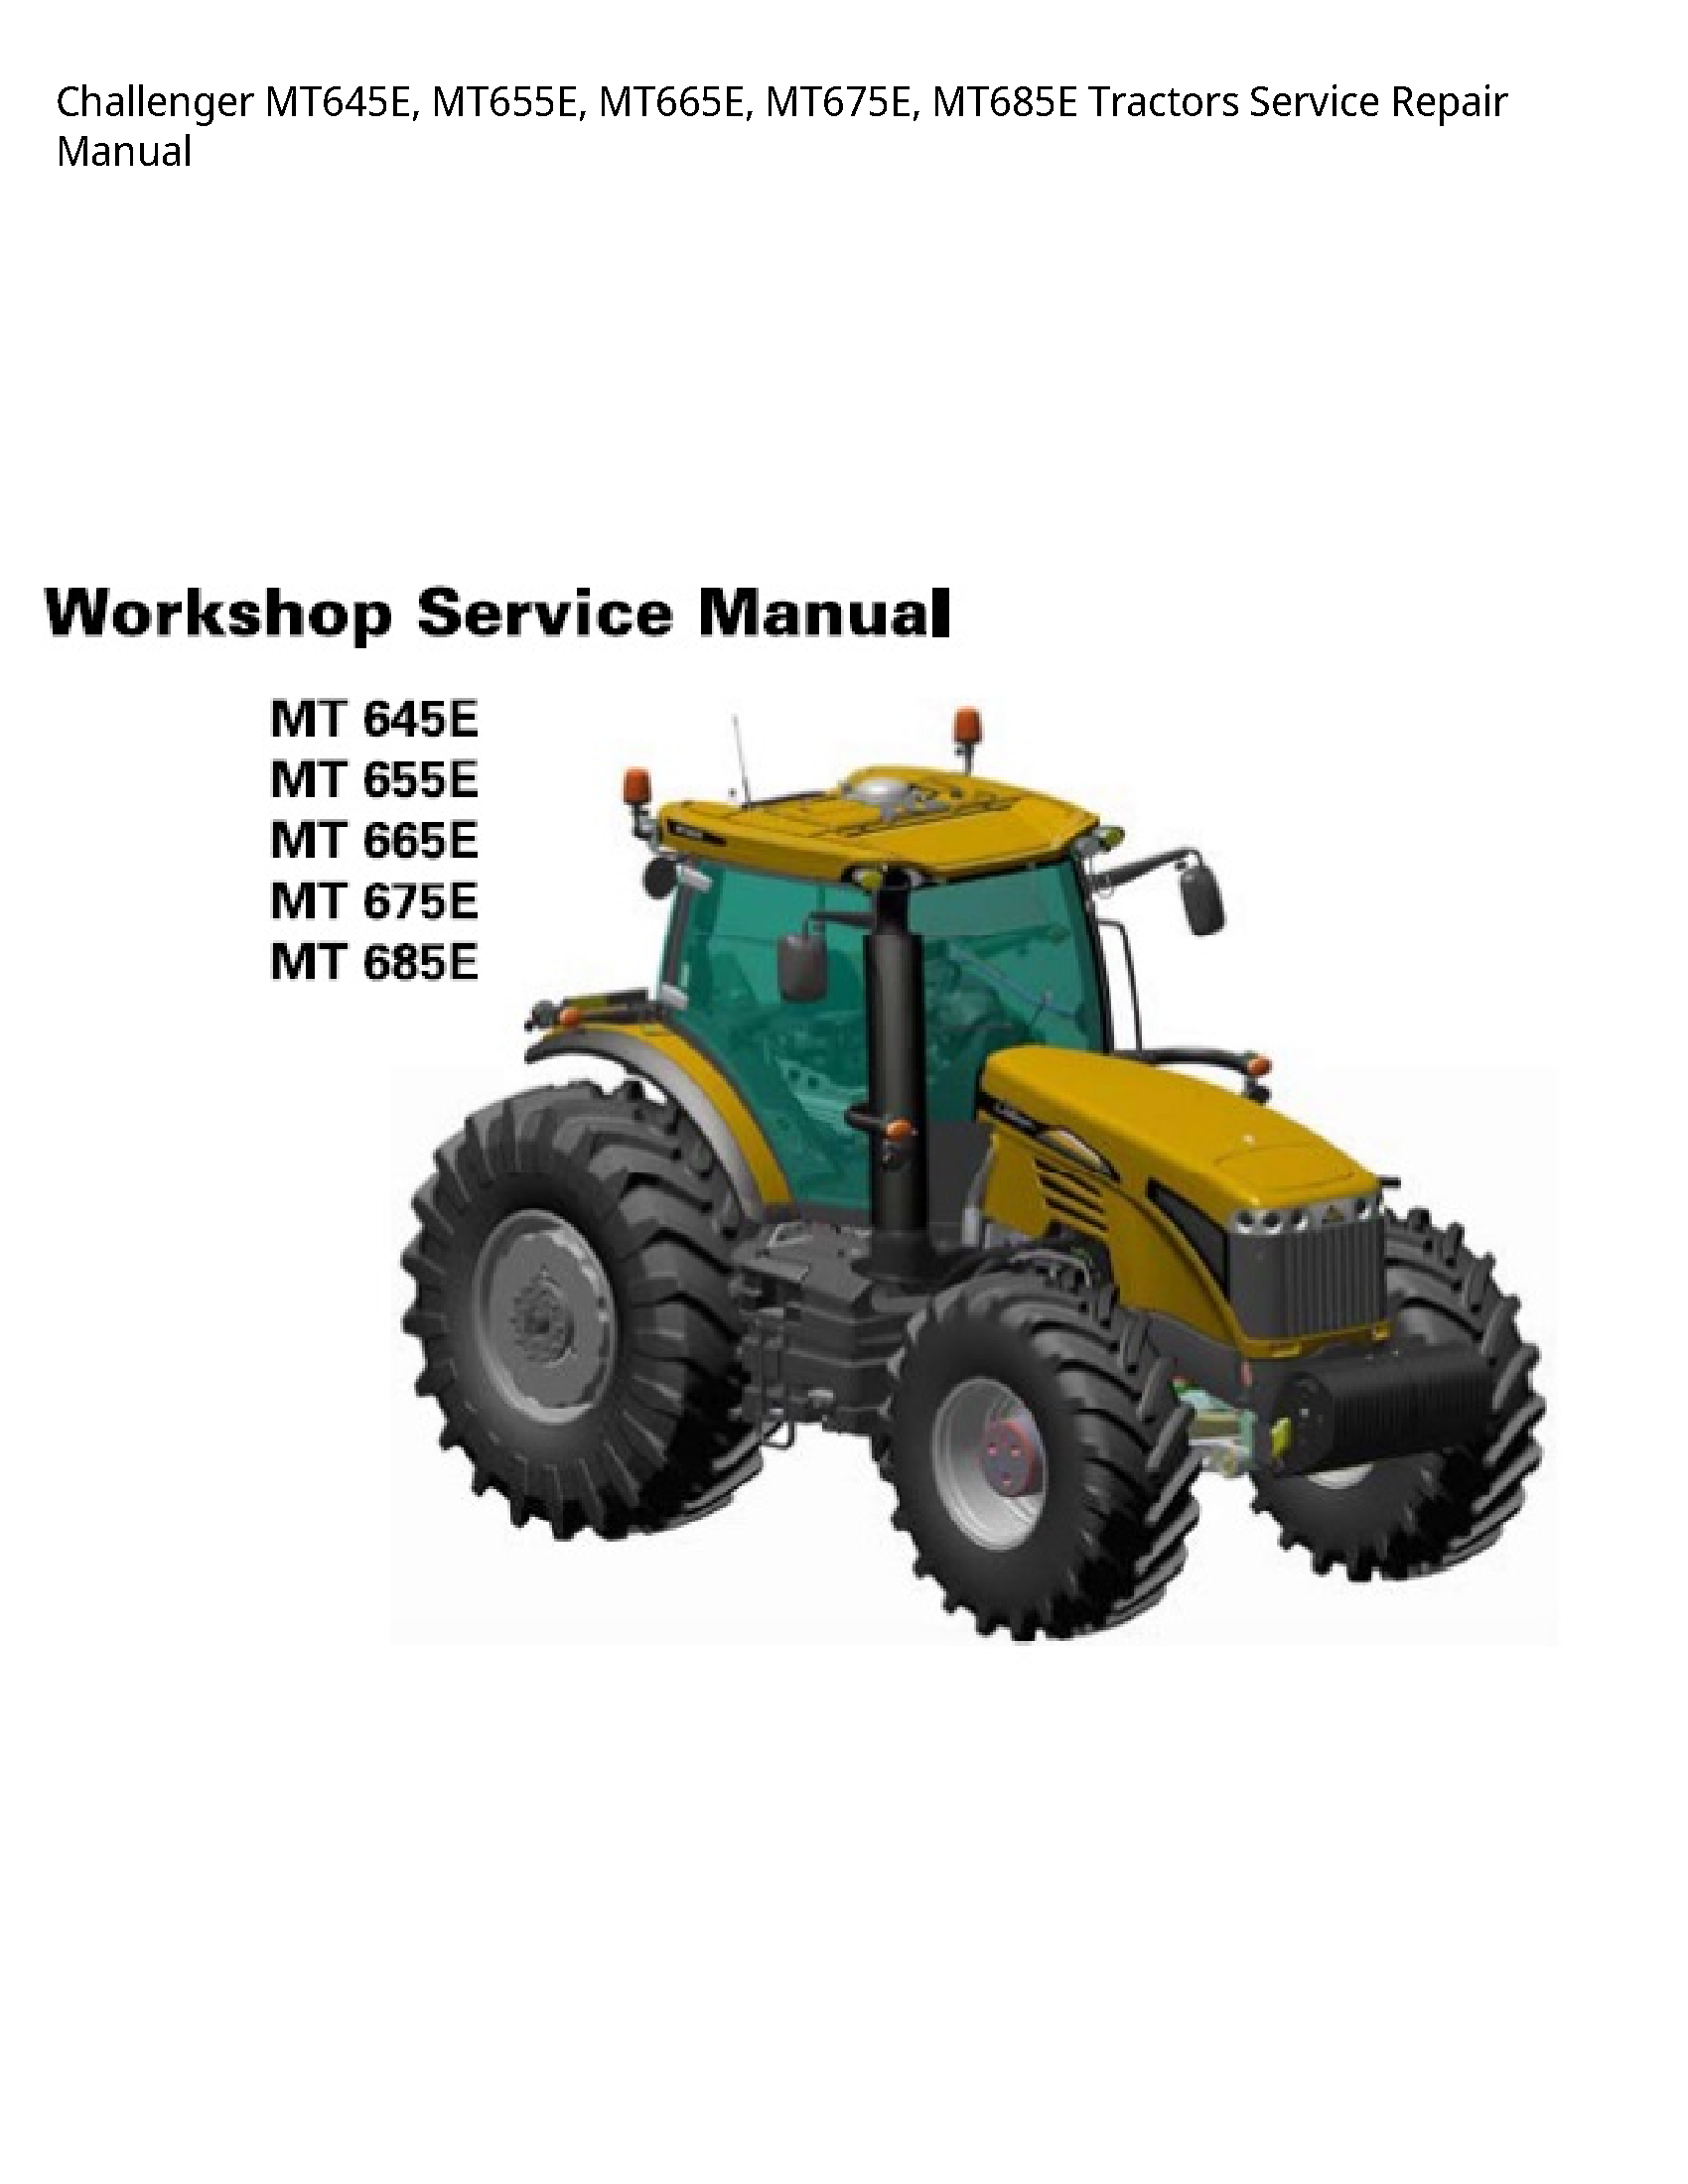 Challenger MT645E Tractors manual